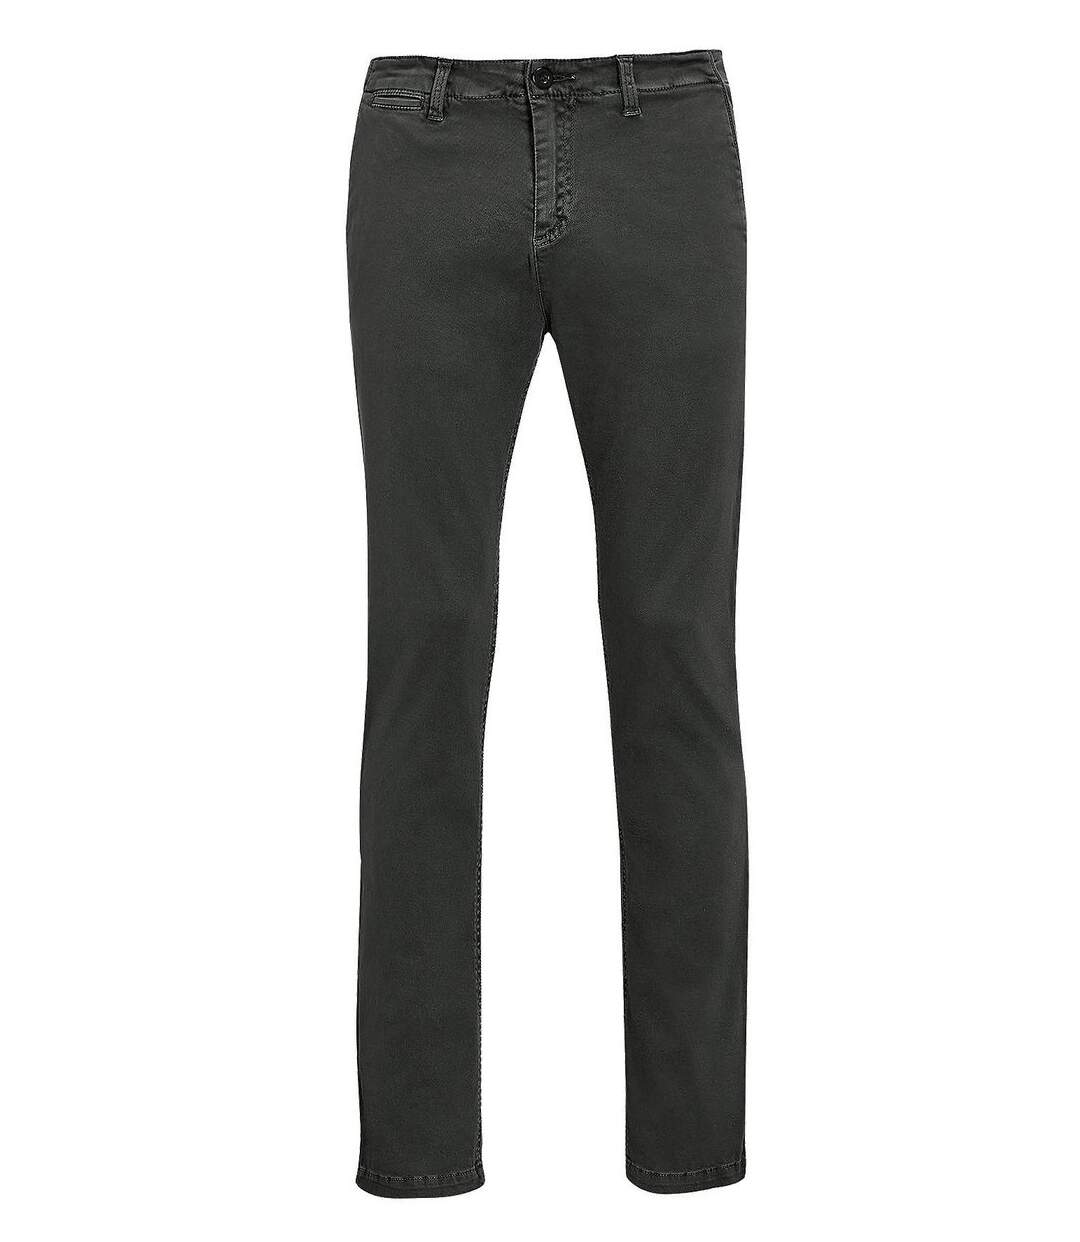 pantalon toile stretch homme - 01424 L33 - gris anthracite